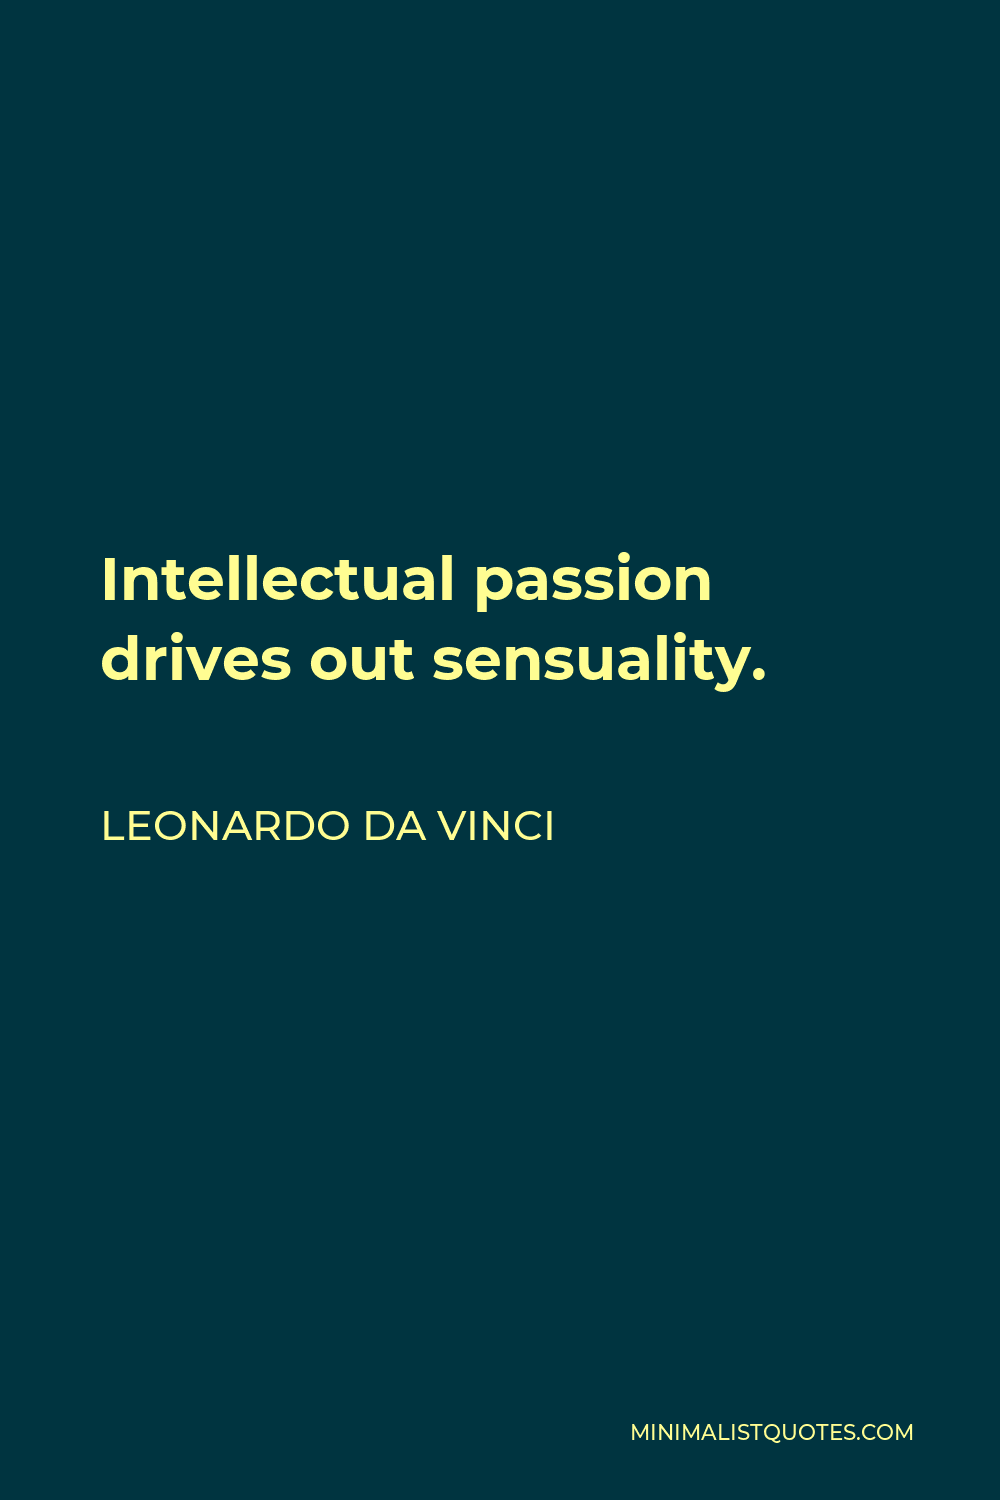 Leonardo da Vinci Quote - Intellectual passion drives out sensuality.